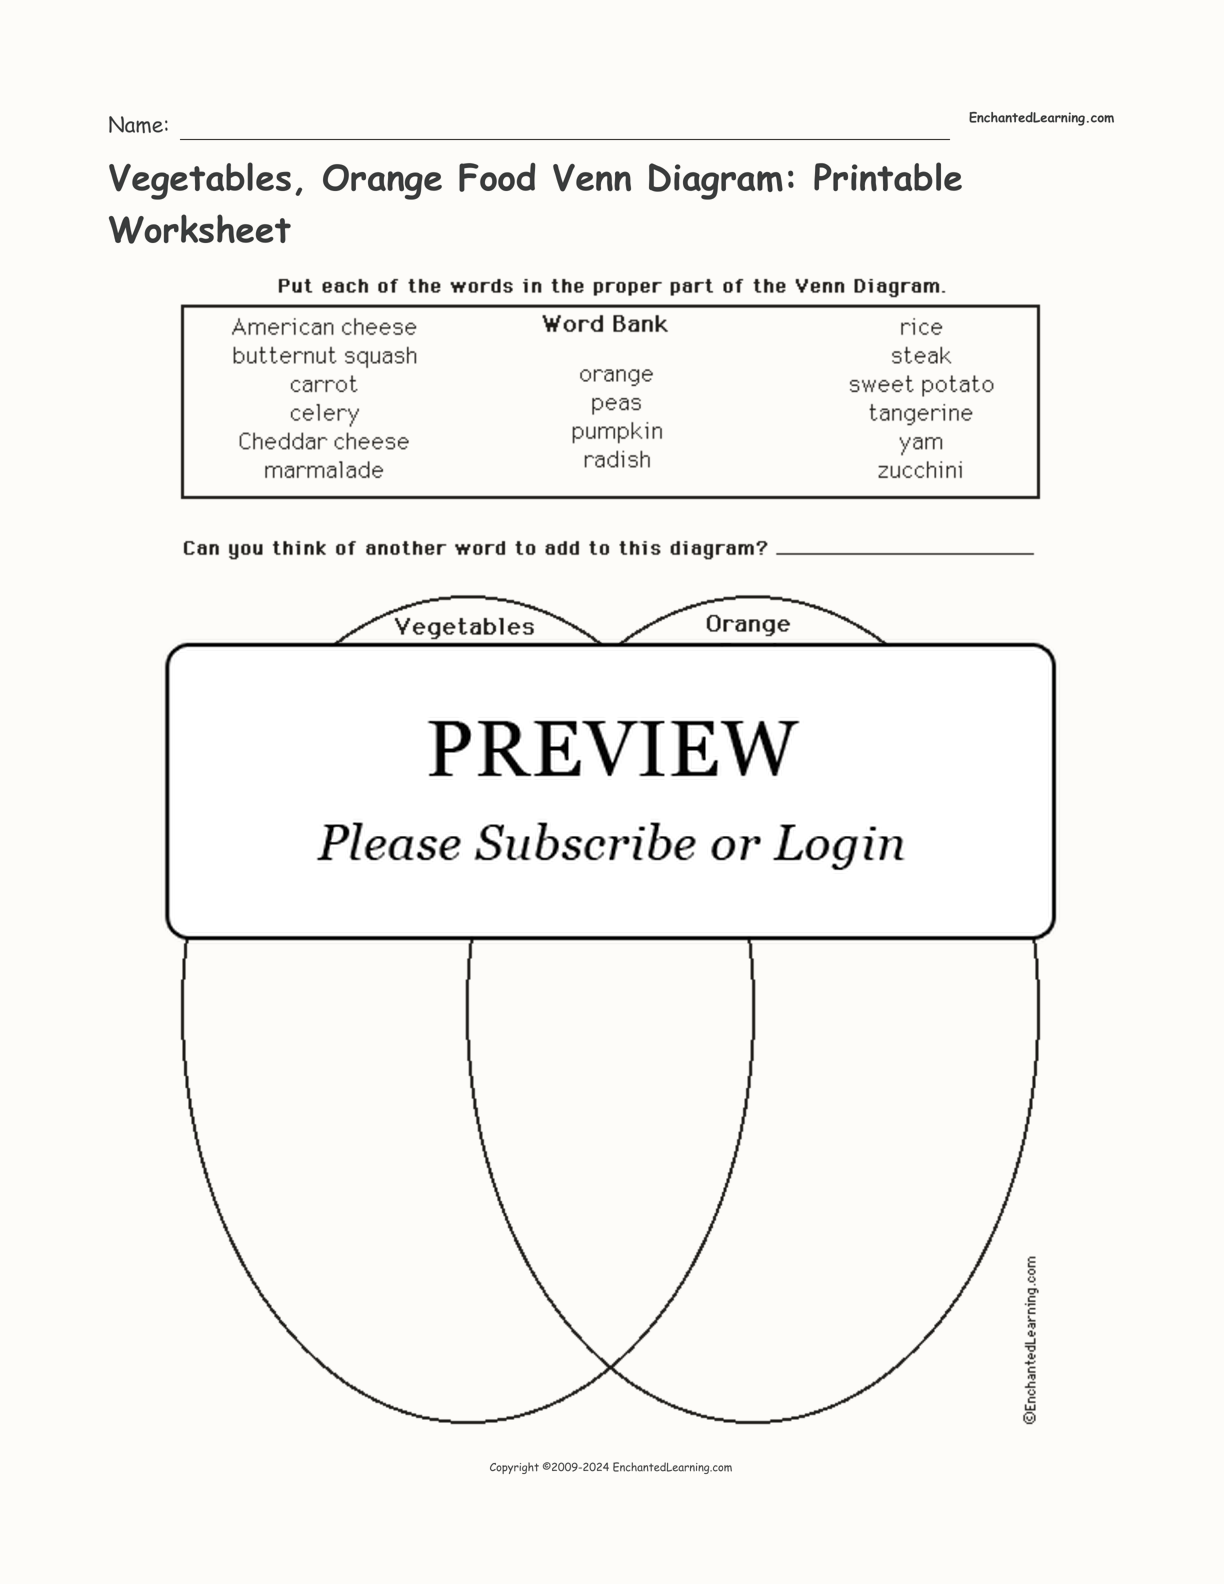 Vegetables, Orange Food Venn Diagram: Printable Worksheet interactive worksheet page 1